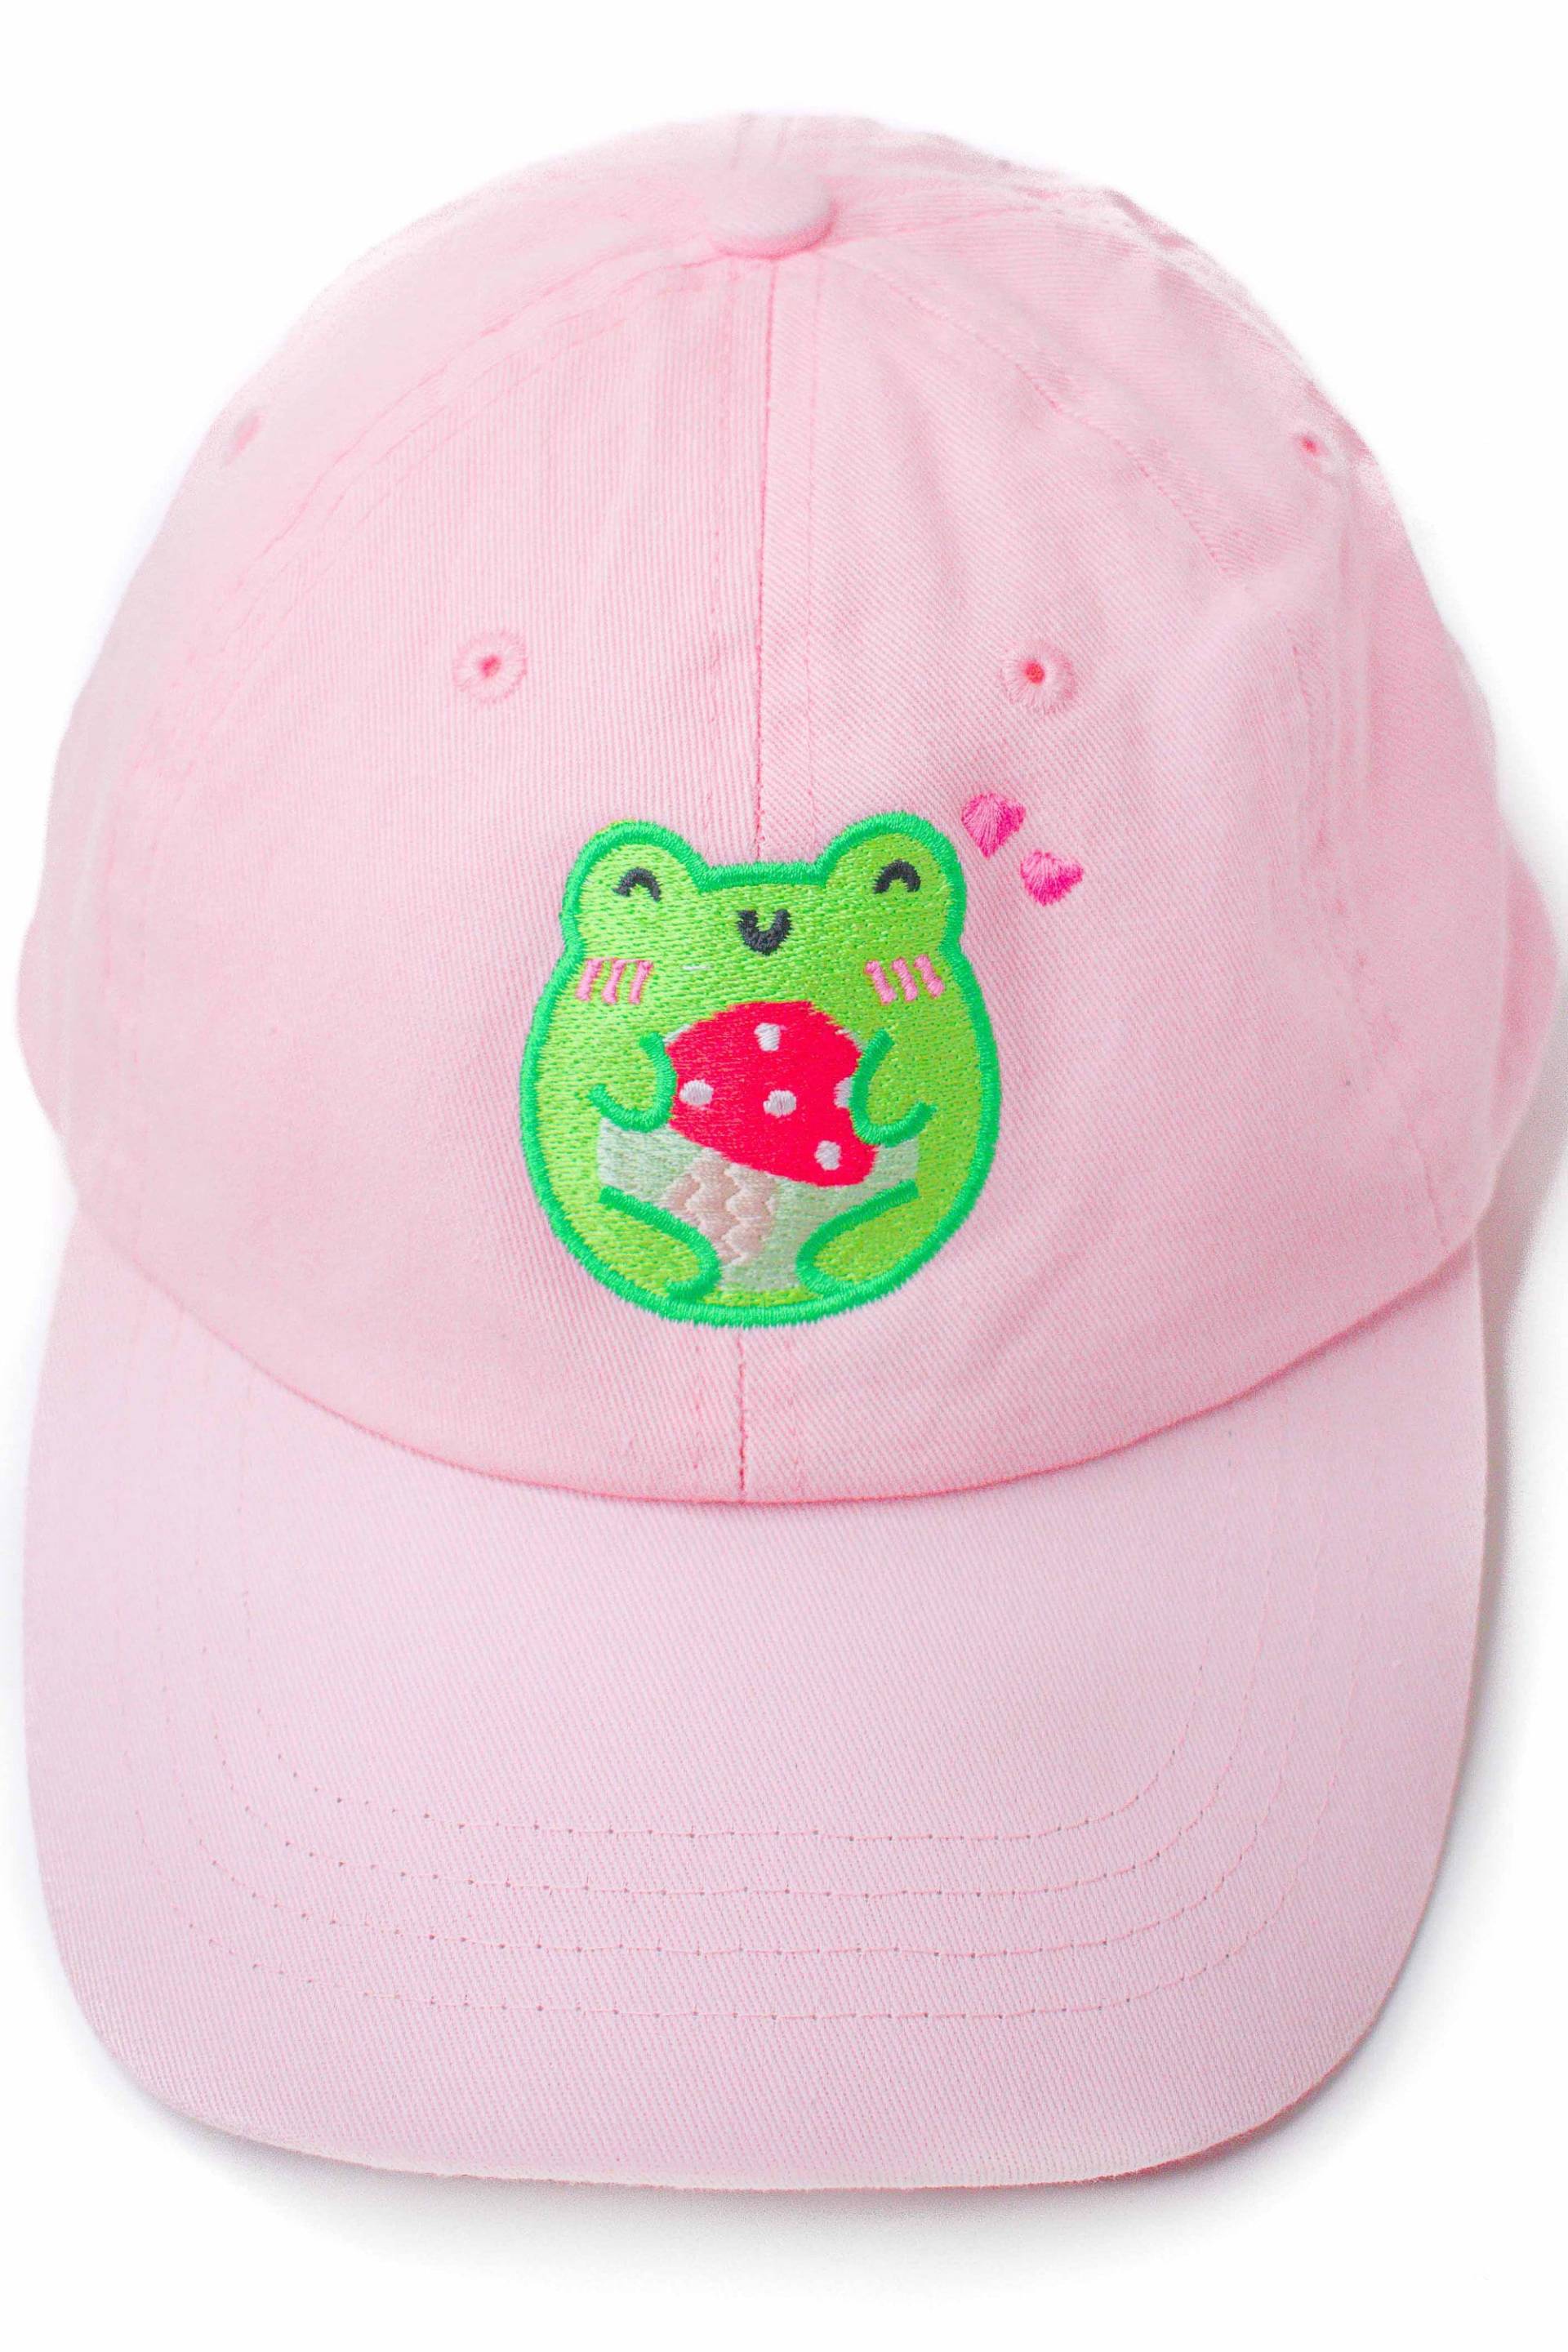 Bezaubernd Frosch Pilz Hug Bestickte Mütze Dad Hat Cottagecore Alternative Fashion Mori Girl Unisex Froggy Phrog Froggie By Momokakkoii von Momokakkoii